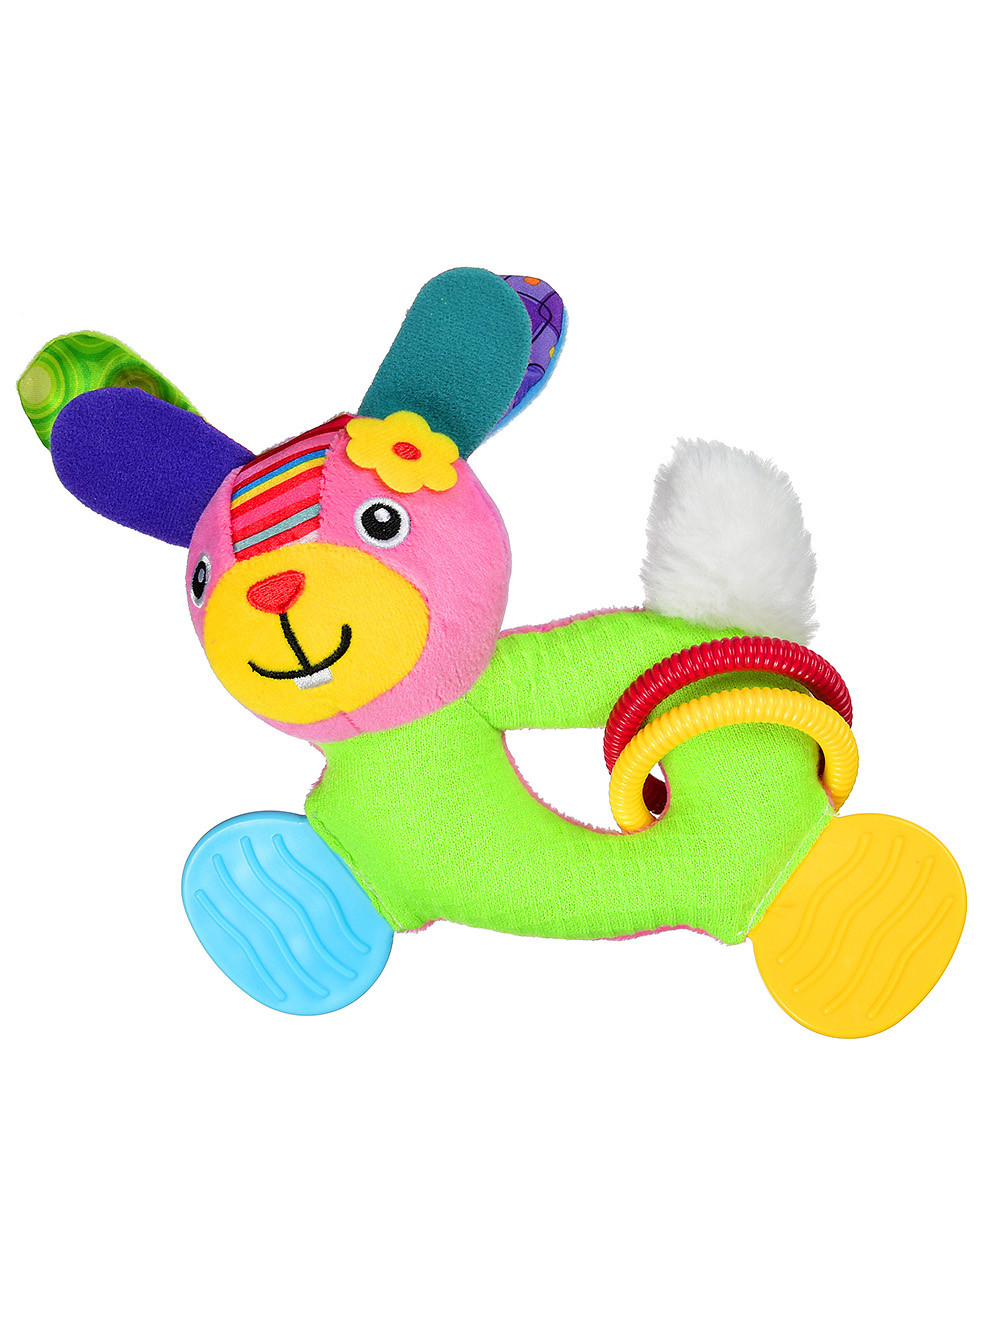 Мягкая игрушка с прорезывателем и погремушкой Bright friend (собачка)